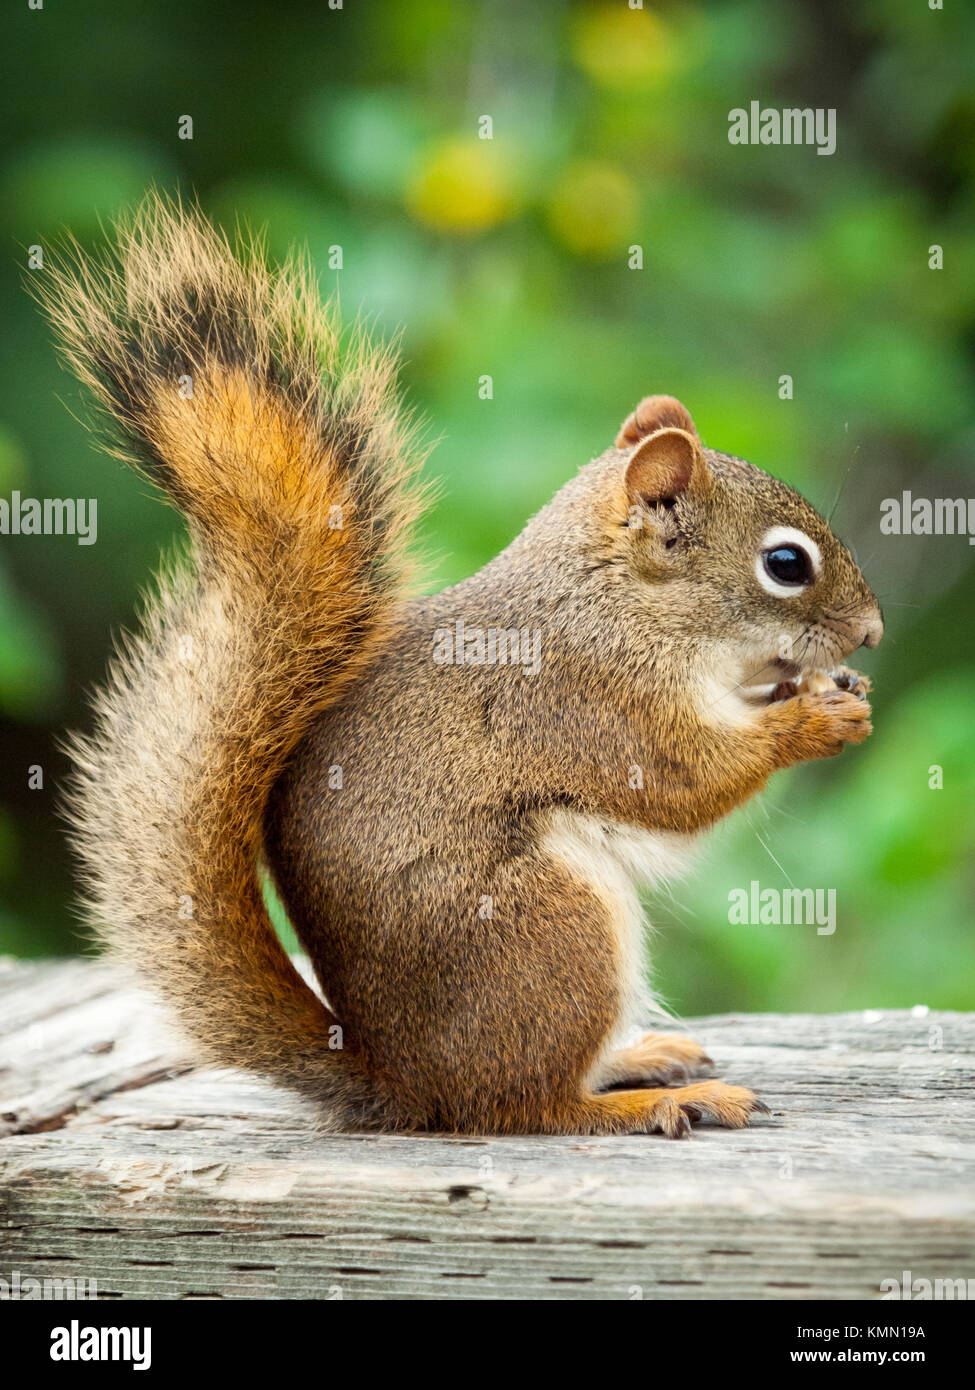 Un Americano scoiattolo rosso (Tamiasciurus hudsonicus), nel profilo di scoiattolo, alimentando ad Whitemud parco e riserva naturale di Edmonton, Alberta, Canada. Foto Stock